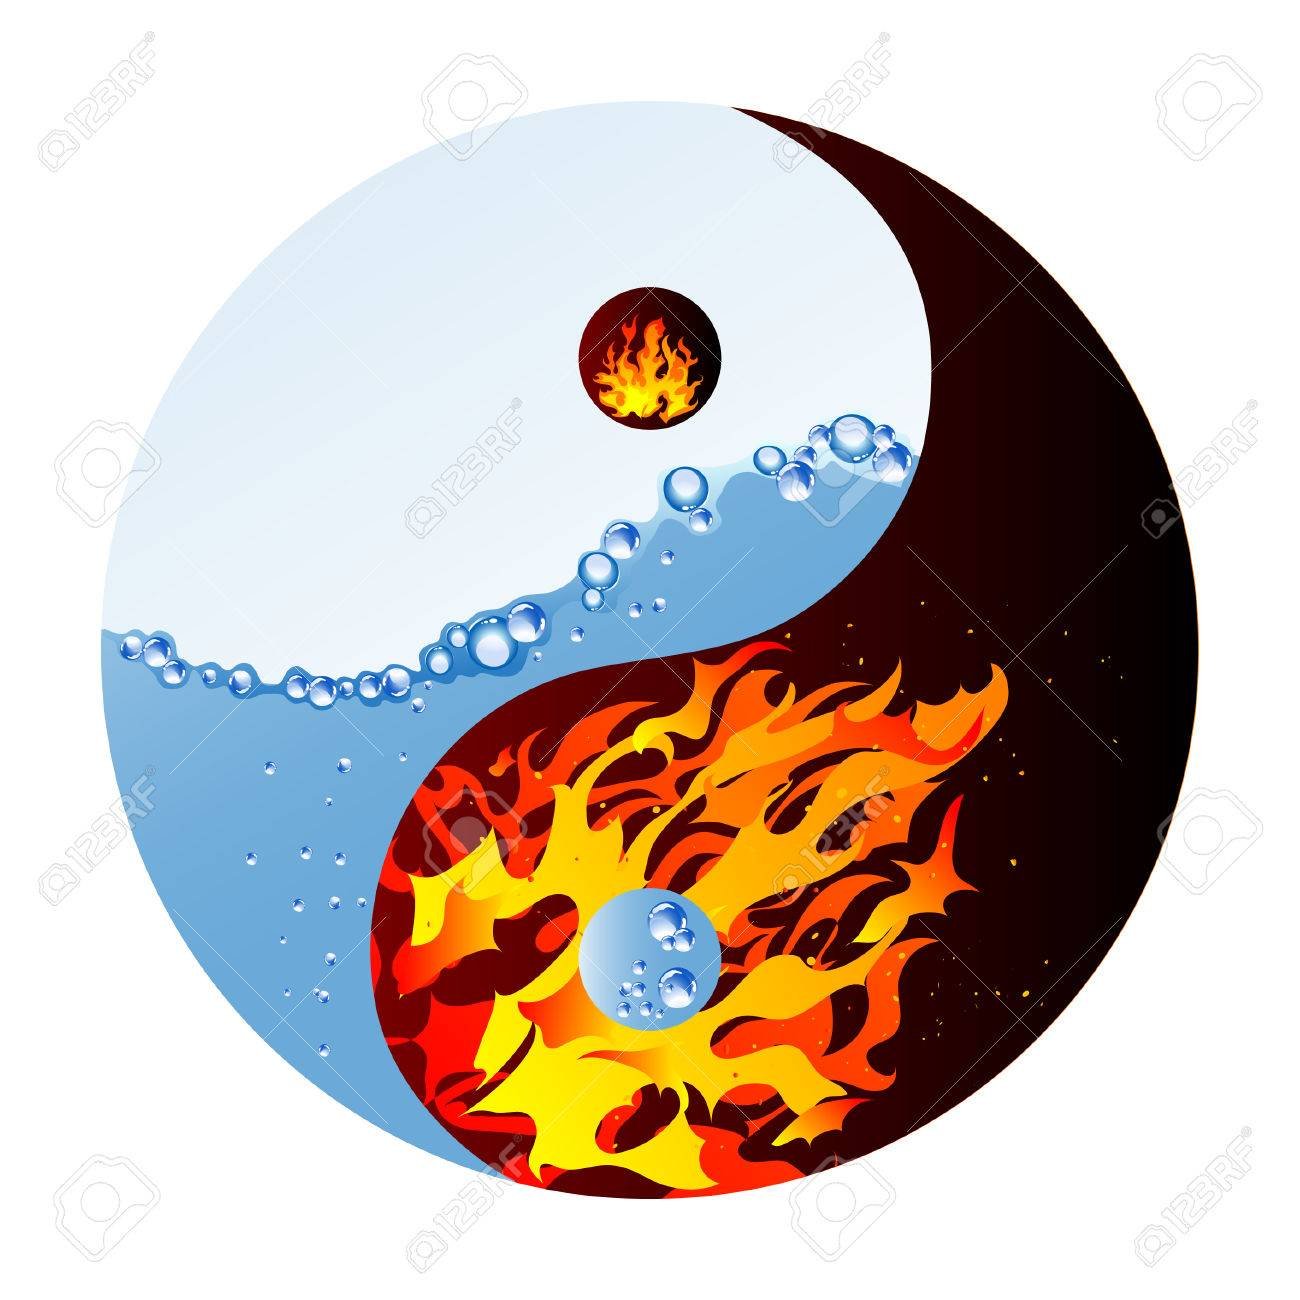 Feuer und wasser. Огонь и вода. Огонь и вода наклейки. Иллюстрация вектор огонь и вода. Стикер огня и льда.